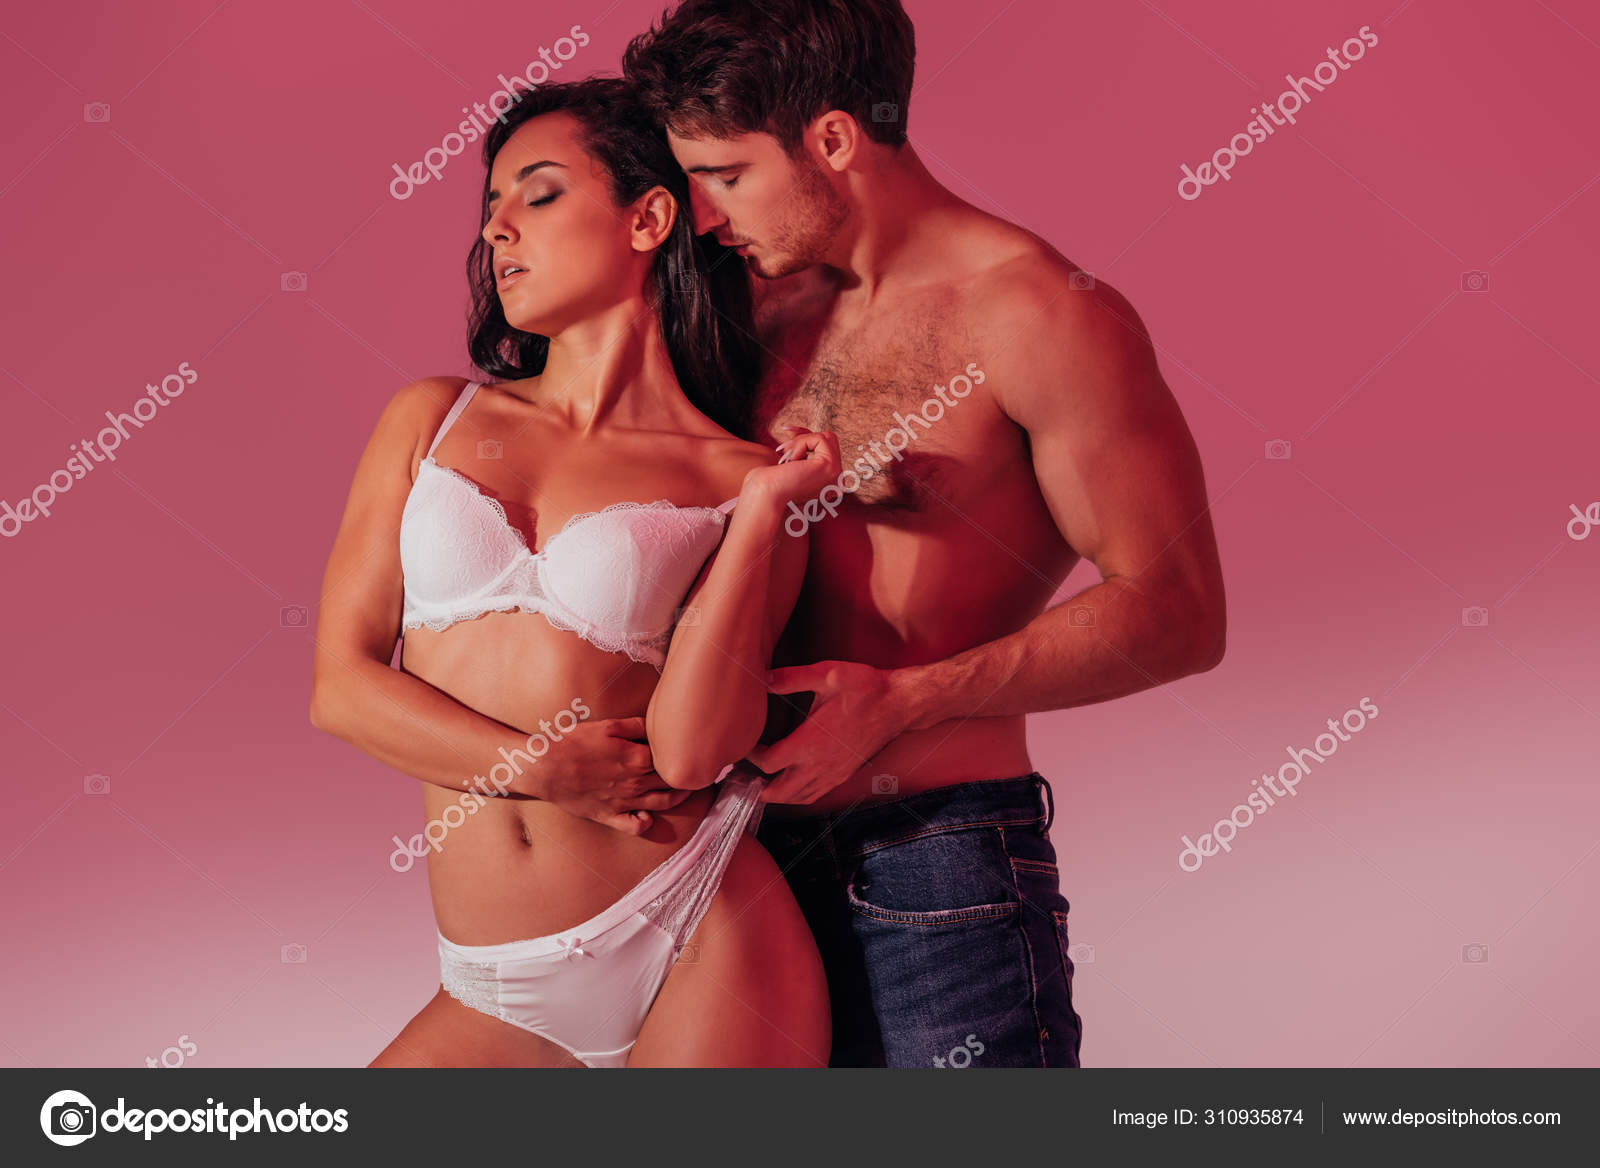 Man Touching Panties of Girlfriend Stock Image - Image of